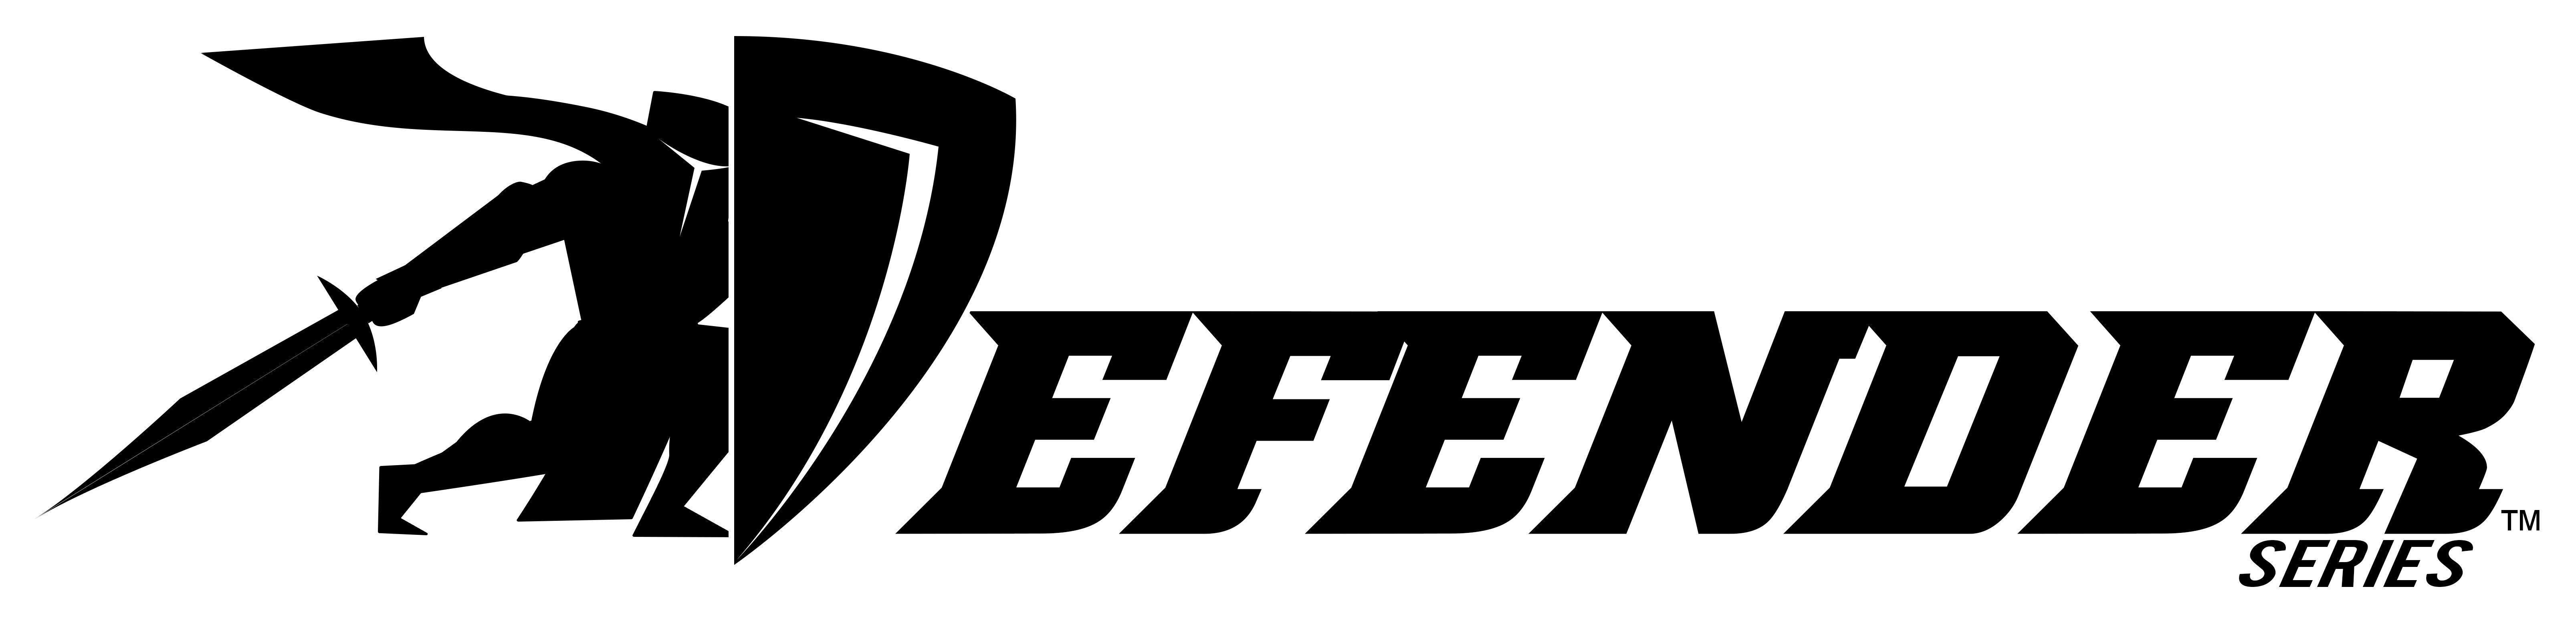 Defender Logo - Defender logo designed for the Defender Series Column Protector ...